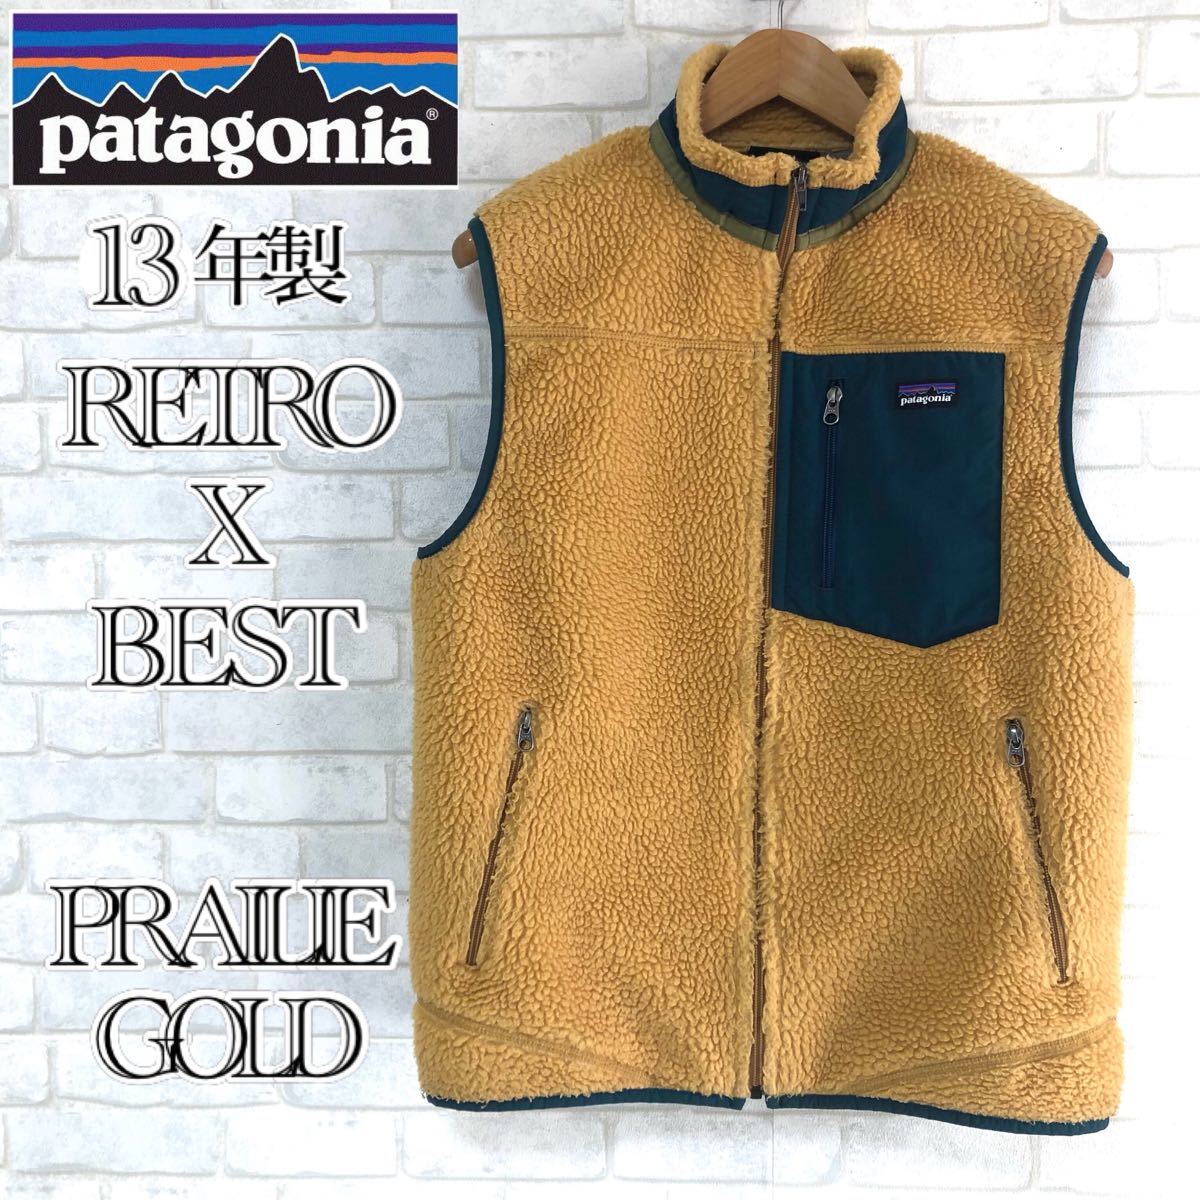 Patagonia レトロx ベスト プレーリーゴールド-